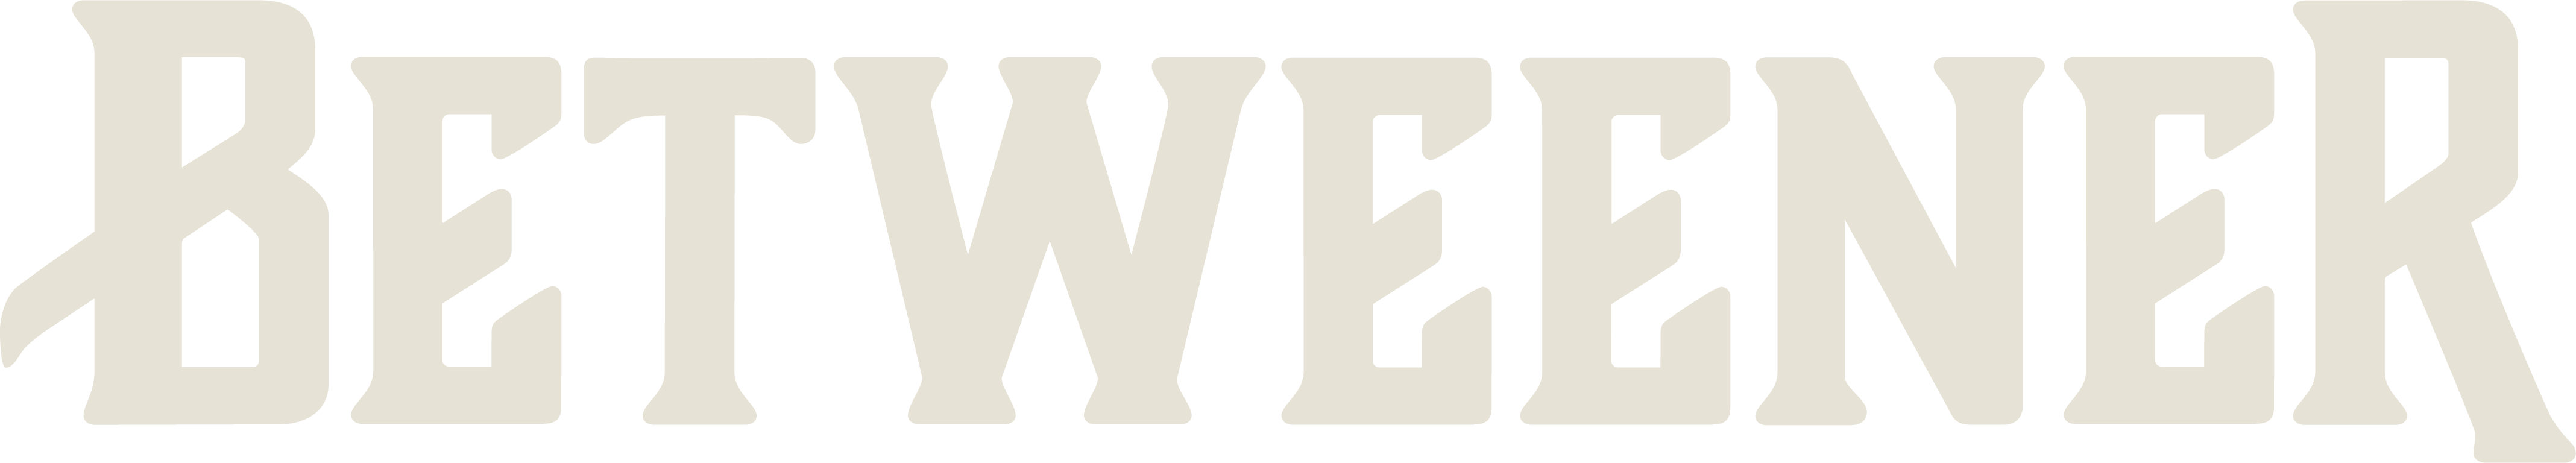 BTWEENER Logo